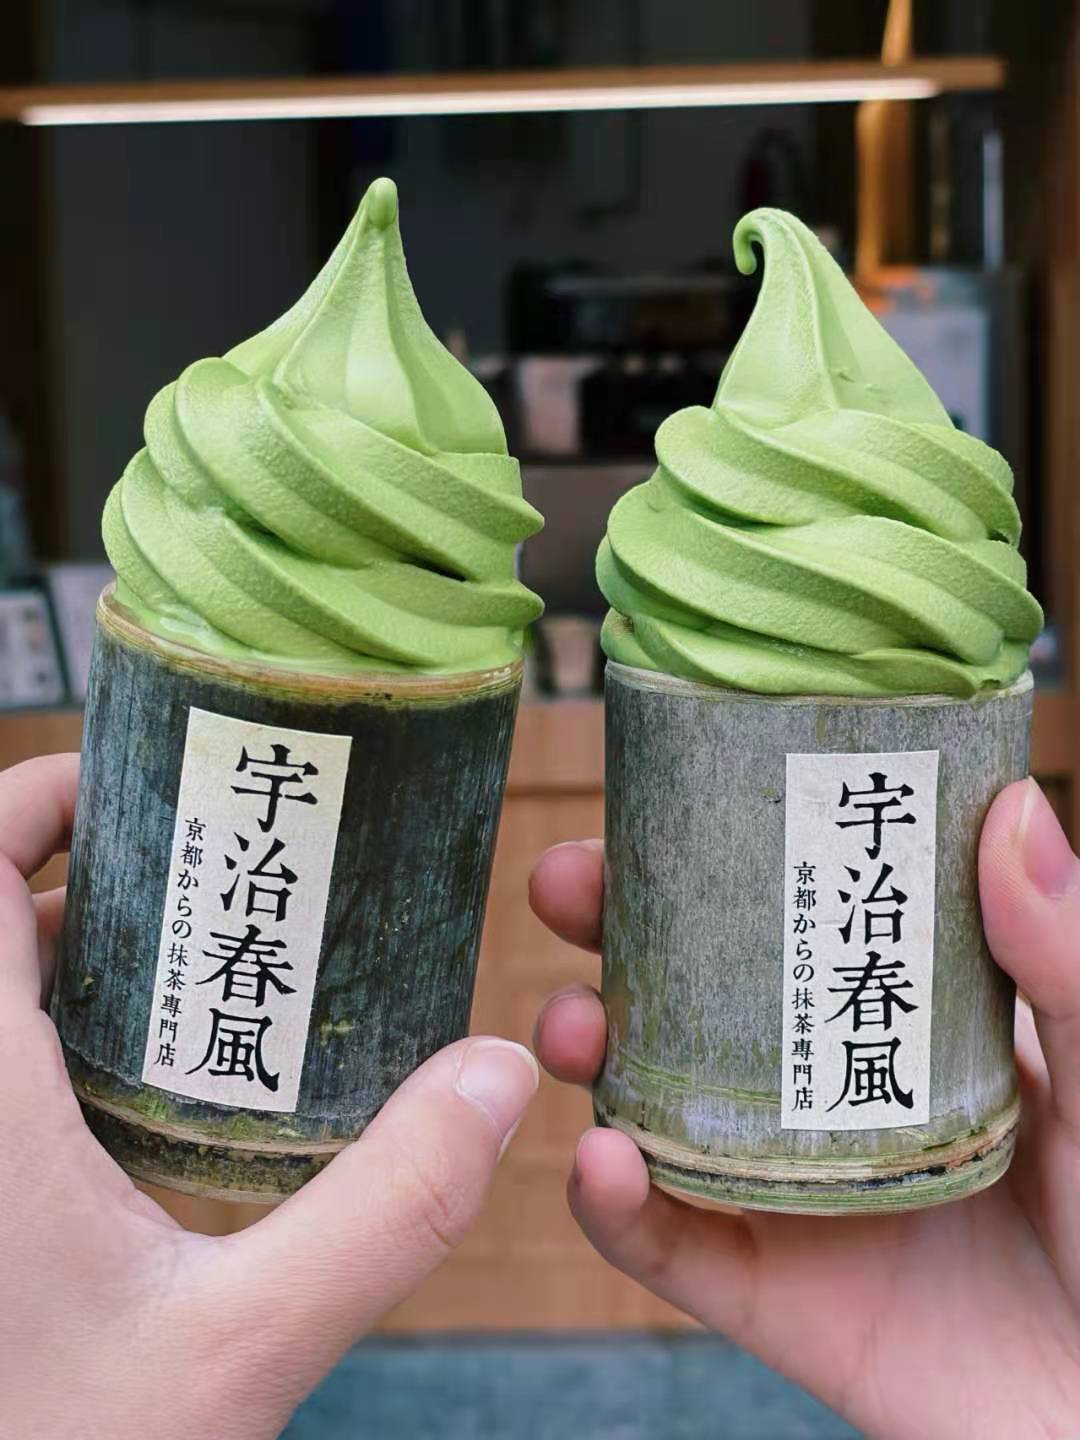 苏州宝藏小店:来自京都的抹茶竹筒冰激凌